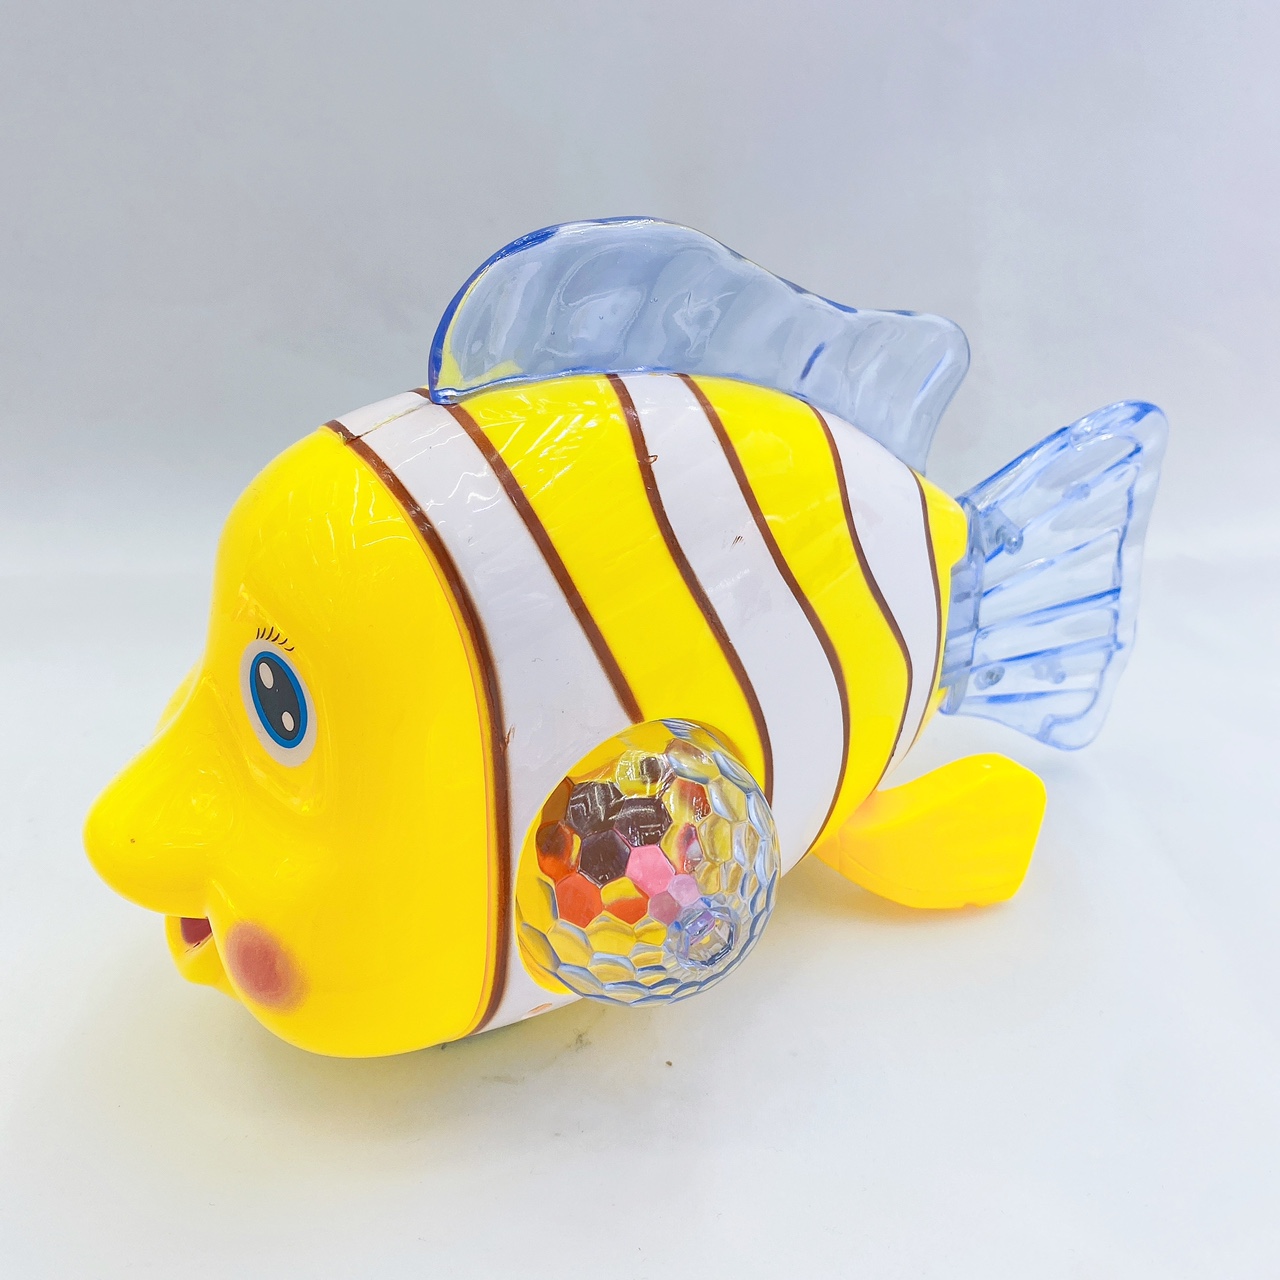 红松玩具小丑鱼鲤鱼电动玩具其他电动玩具批发01图